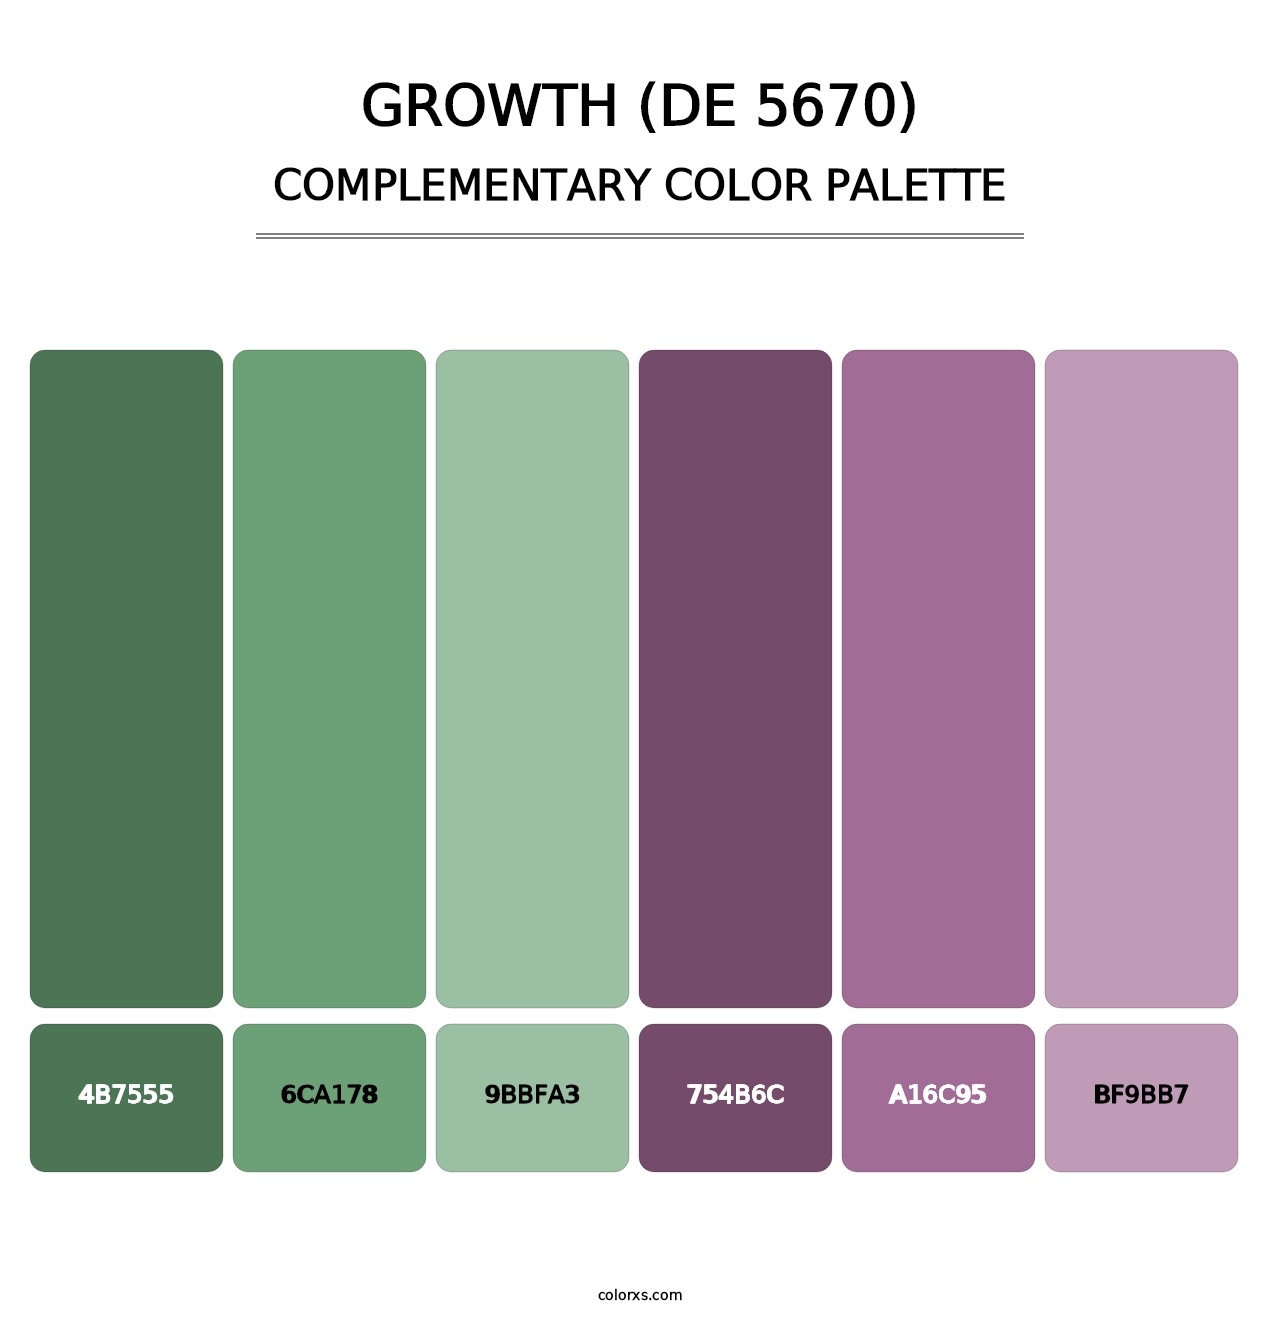 Growth (DE 5670) - Complementary Color Palette